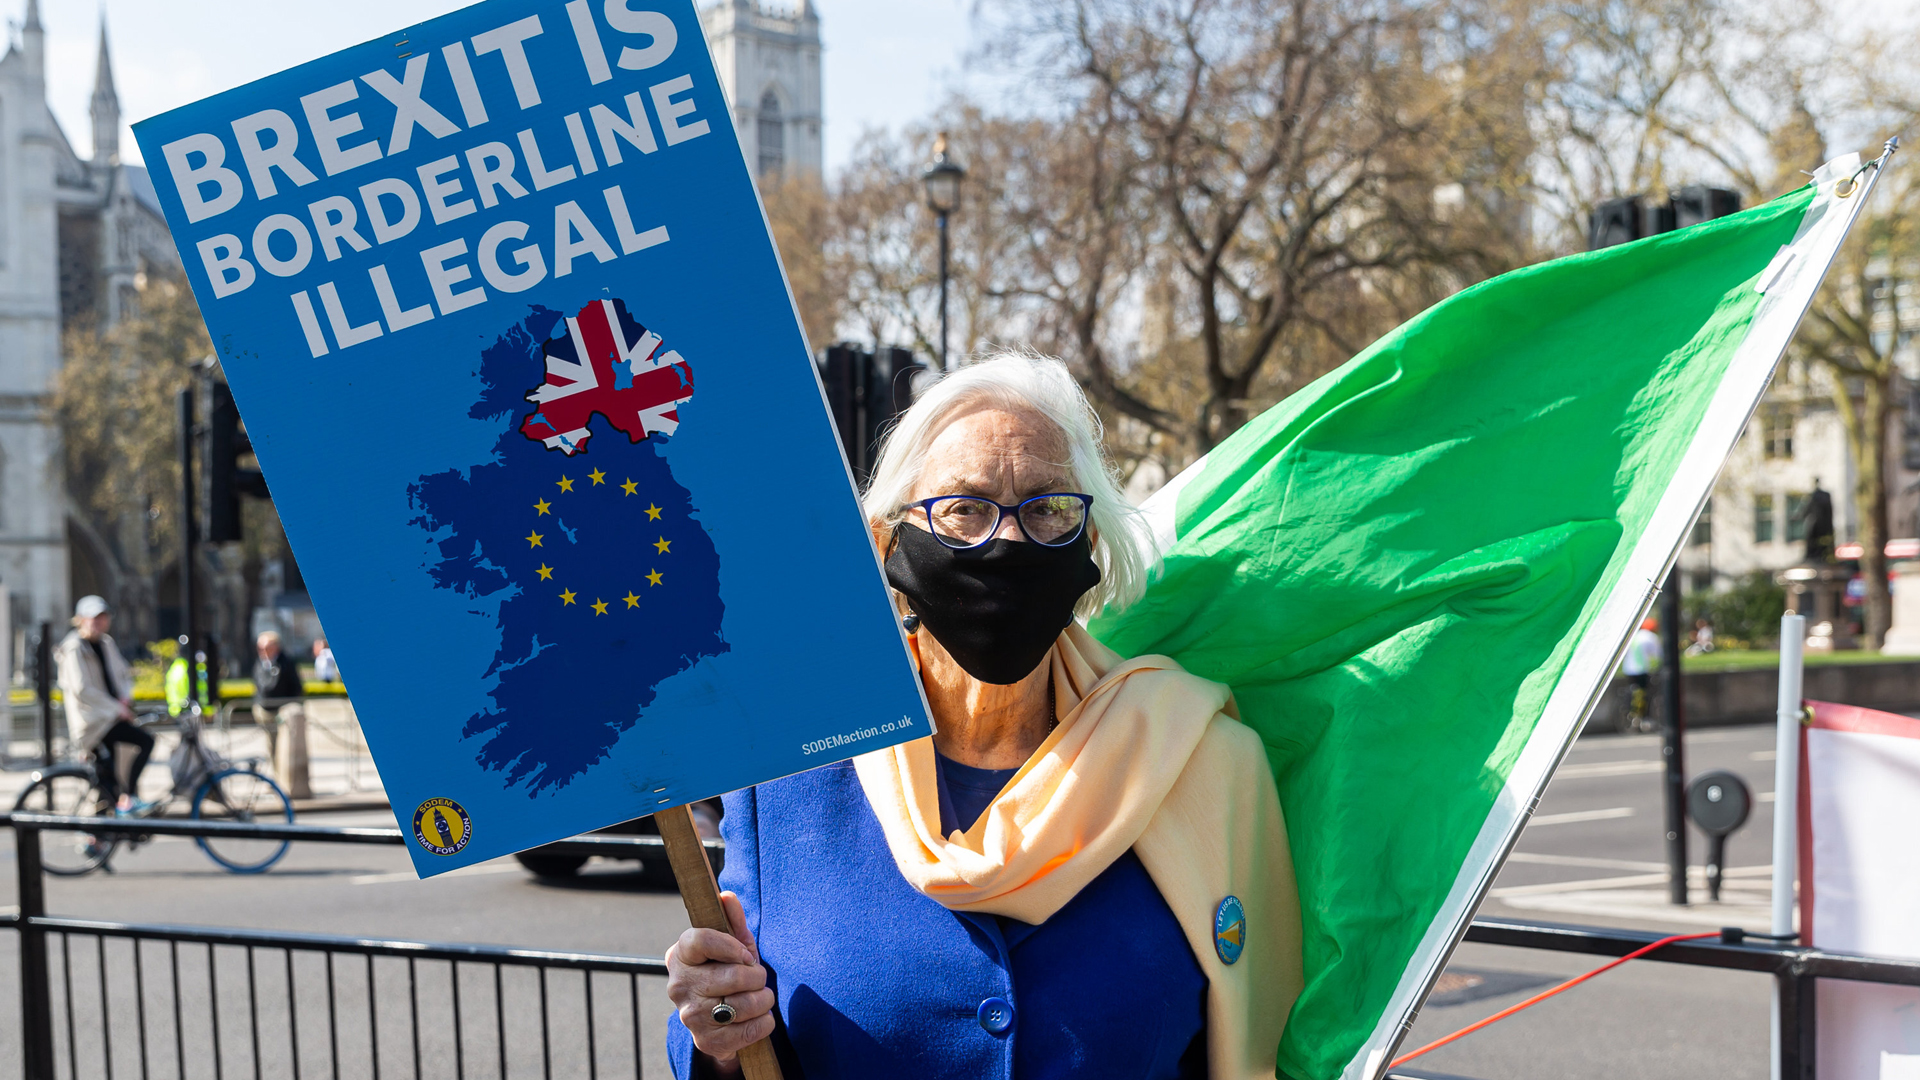 "Brexit ist an der Grenze zur Illegalität" steht auf einem Protestplakat - eine Anspielung auf die Nordirland-Klausel. | picture alliance / NurPhoto